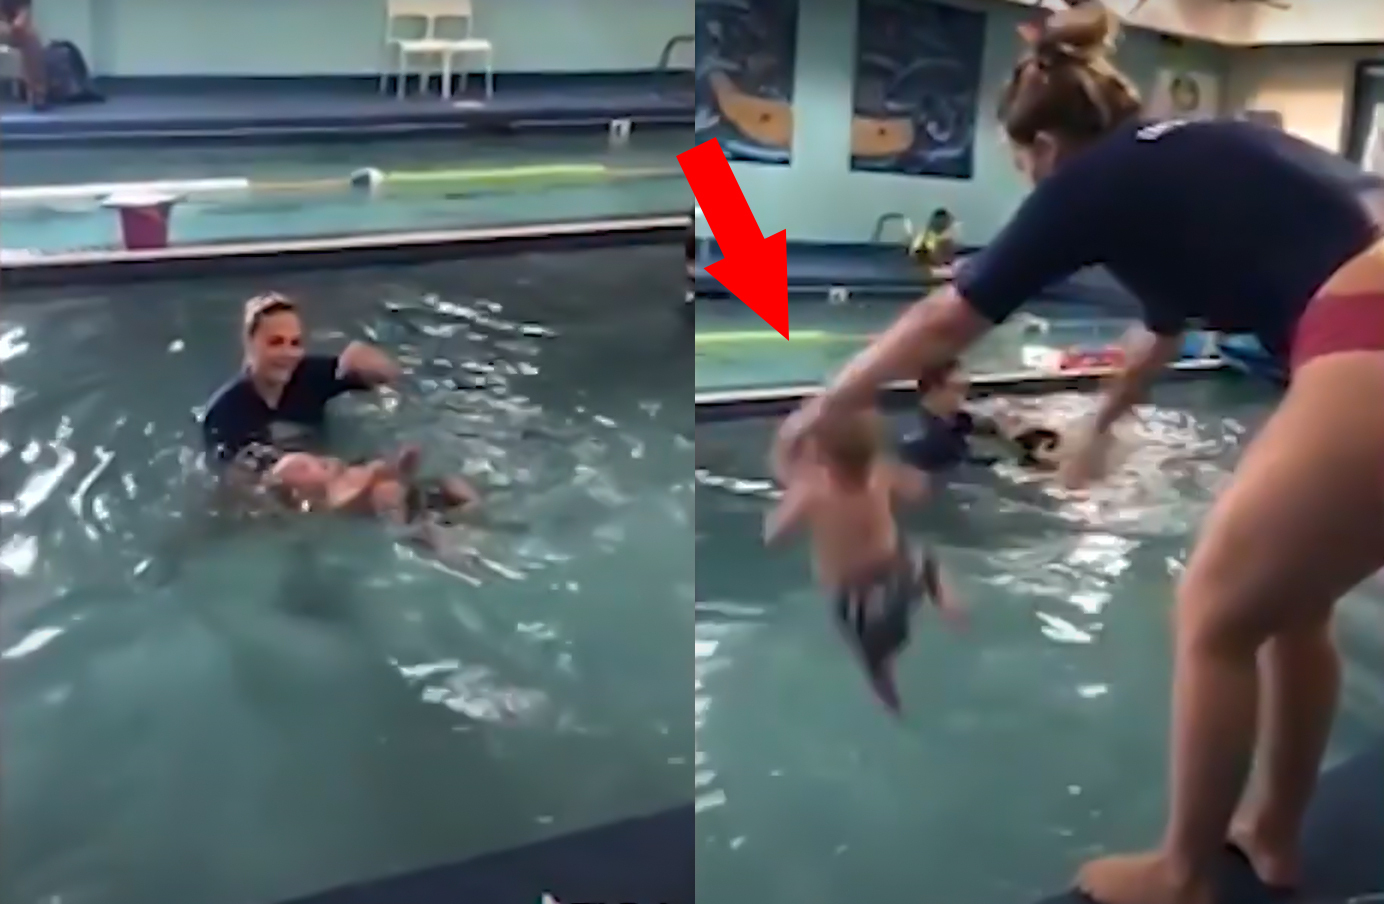 "Вы топите ребенка!": бросившая младенца в бассейн девушка шокировала Сеть - ВИДЕО